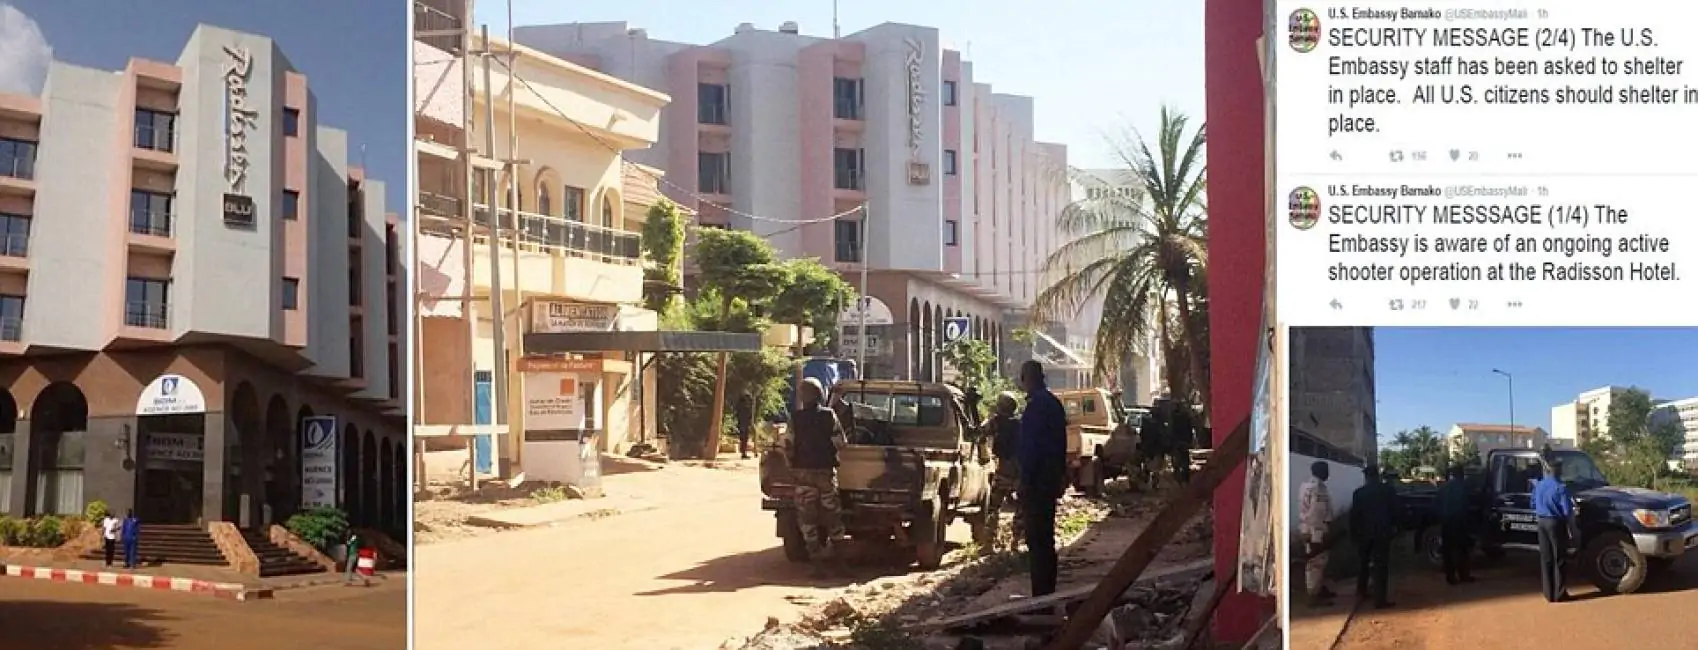 Mali, attacco al Radisson